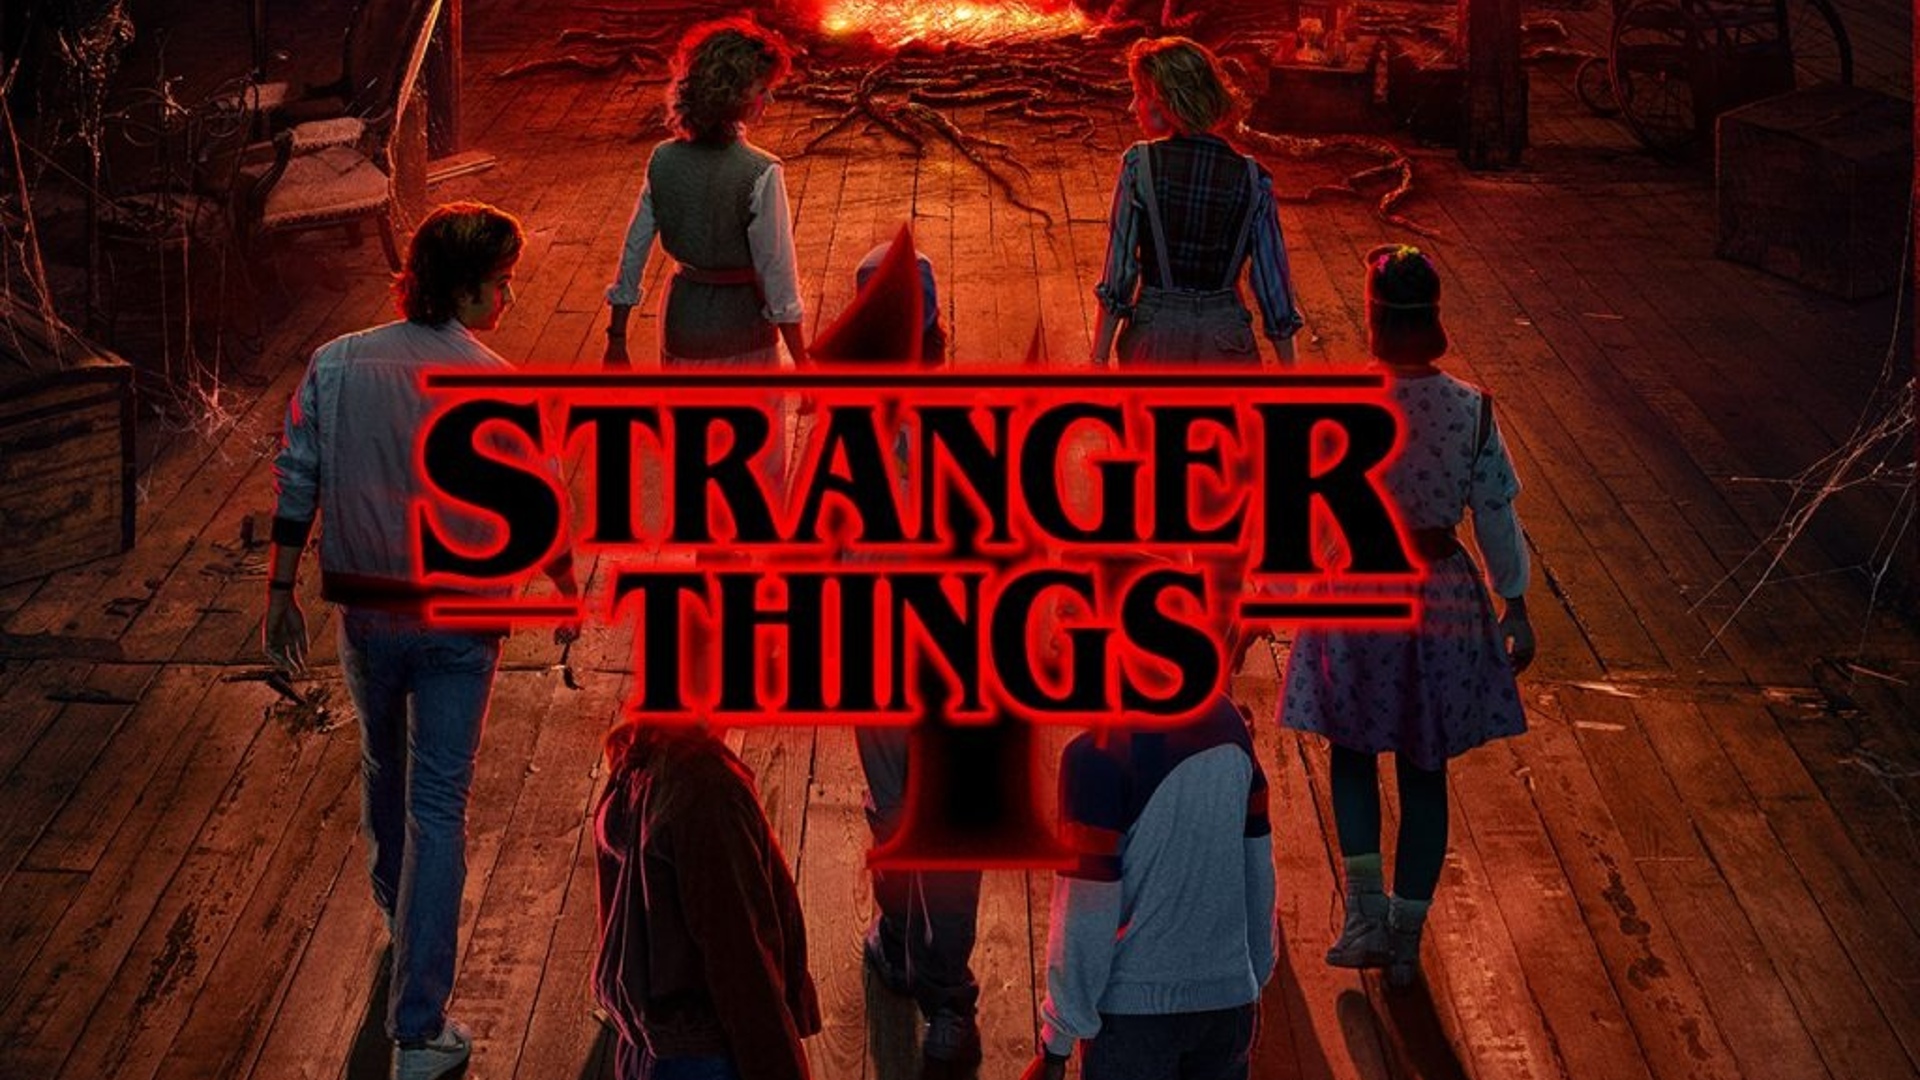 Nova Temporada De Stranger Things Ganha Trailer Cenas De A O E